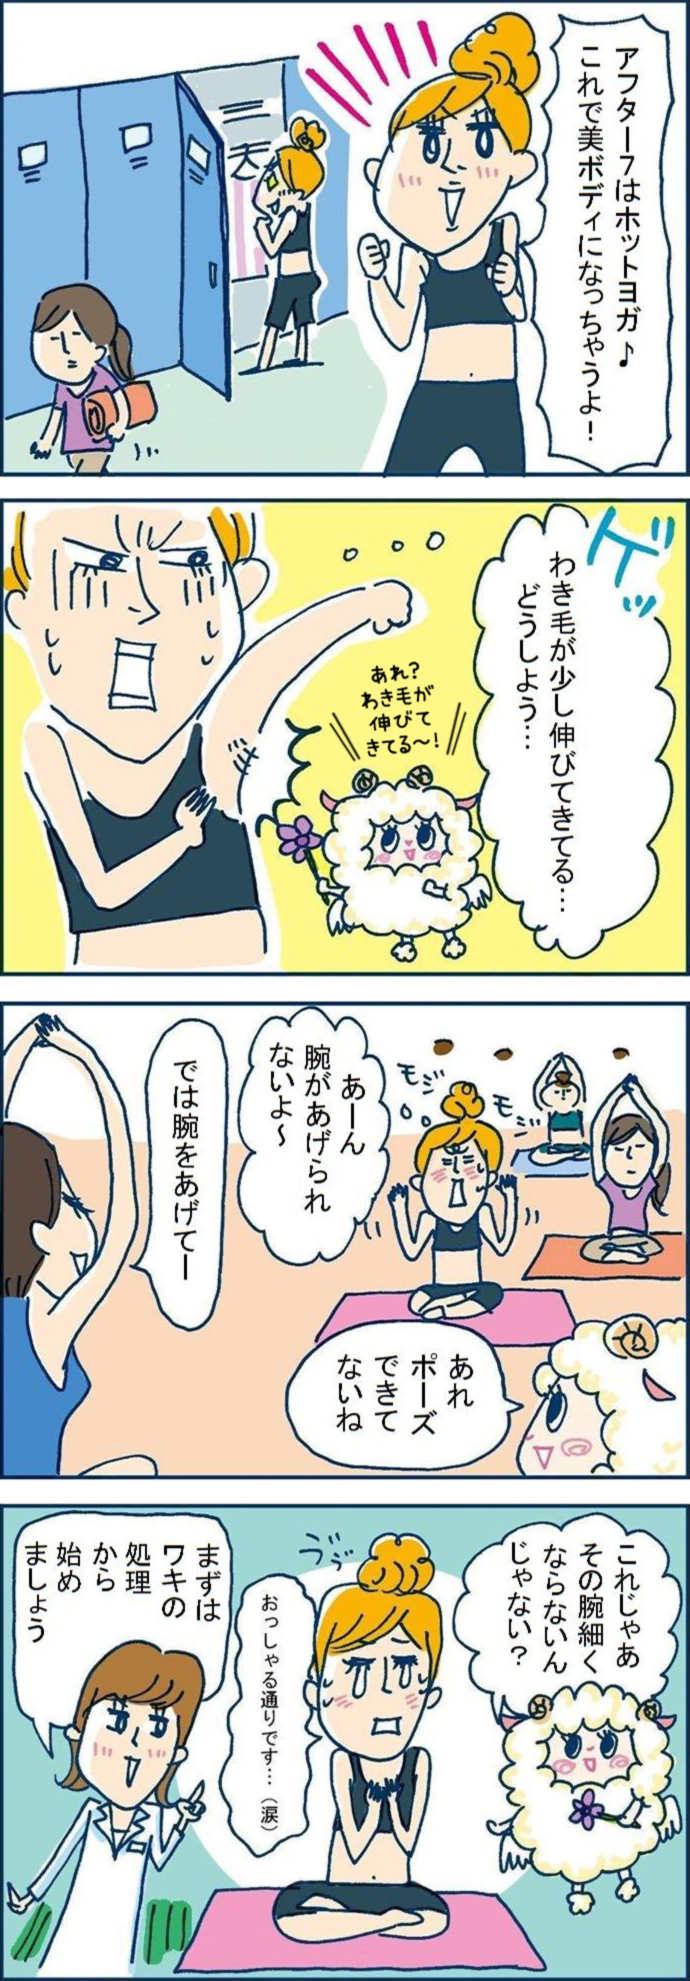 【Vol.1】アフター7はホットヨガ♪ 『ワキ毛のポーズ』!?